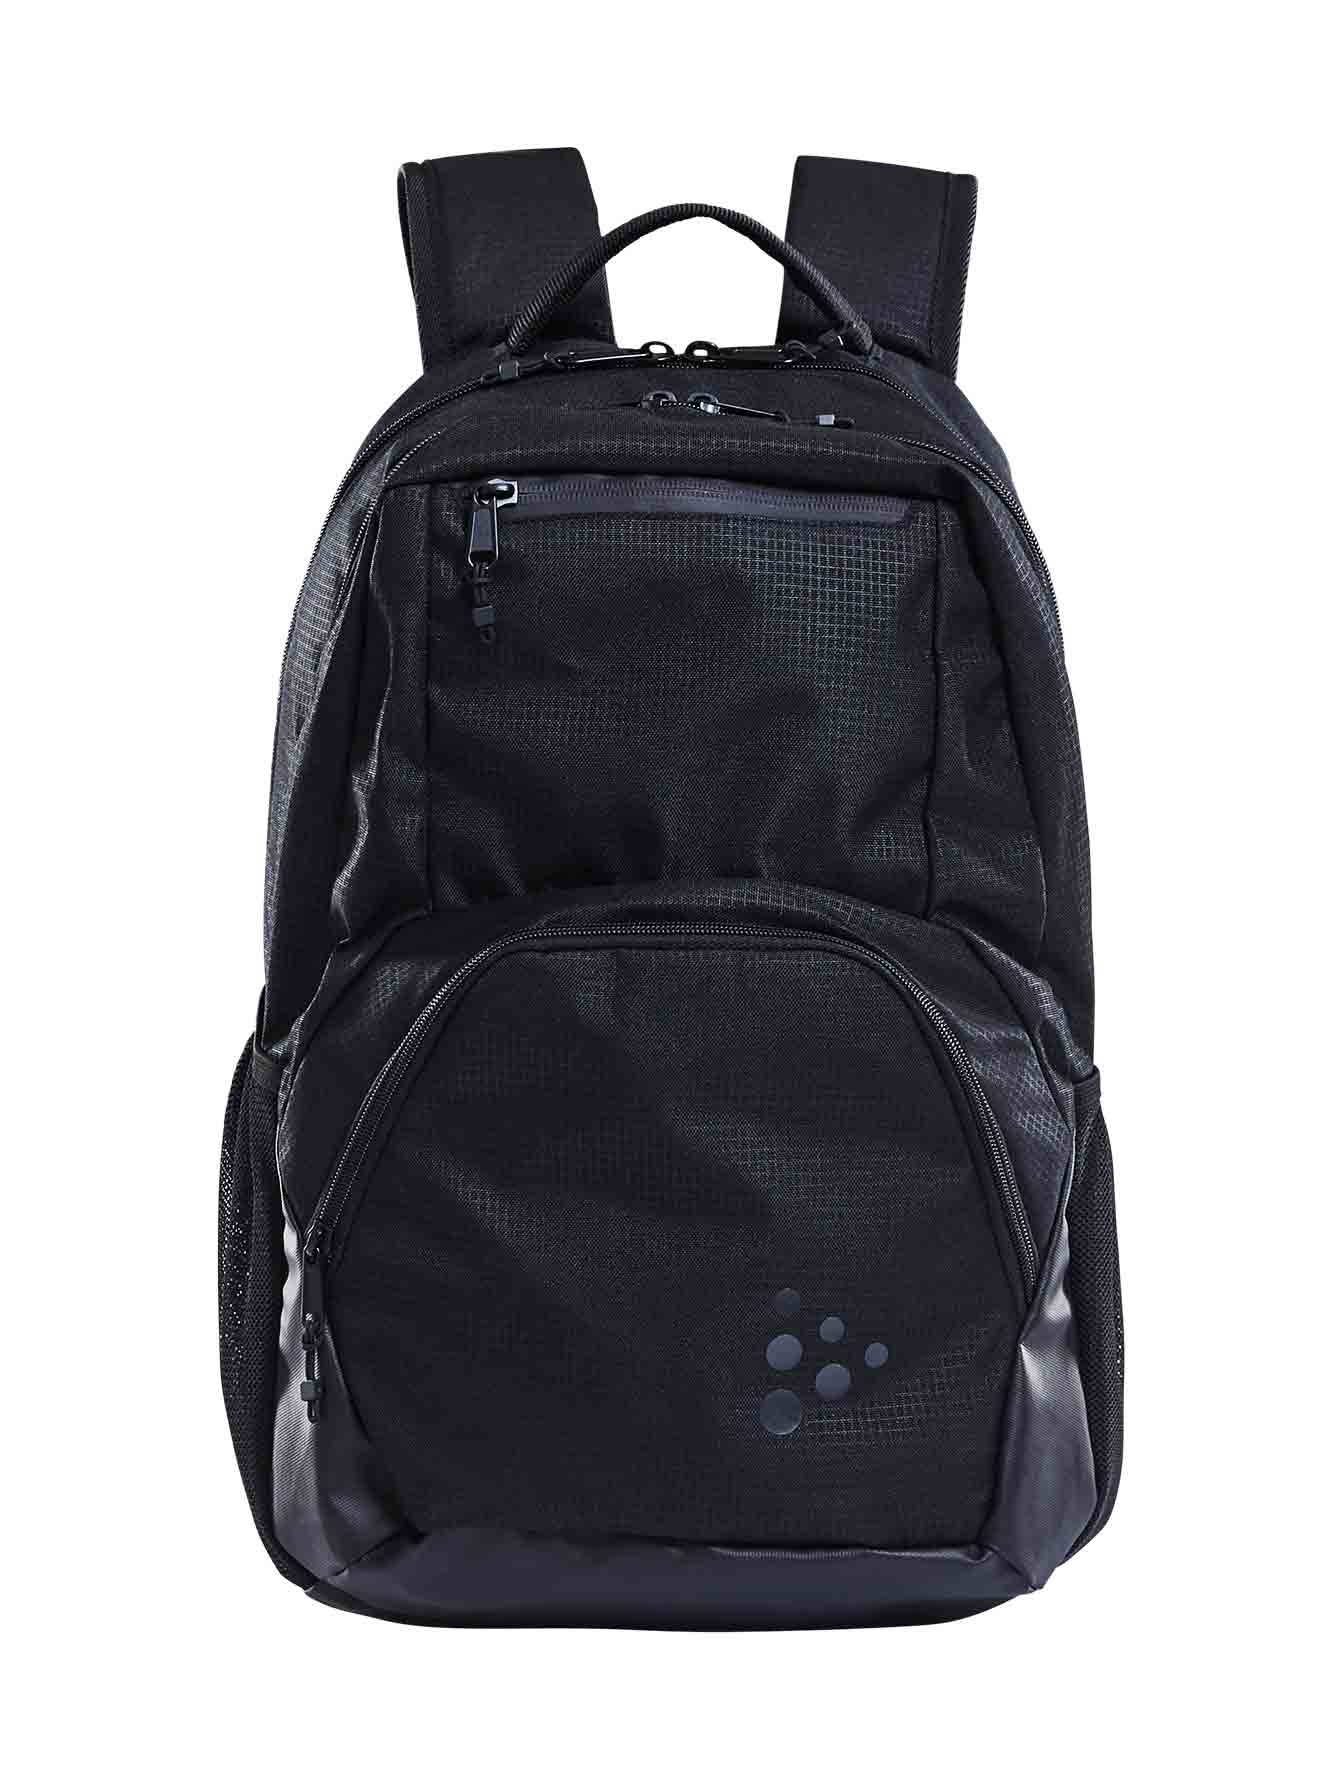 Transit 25L Backpack Black